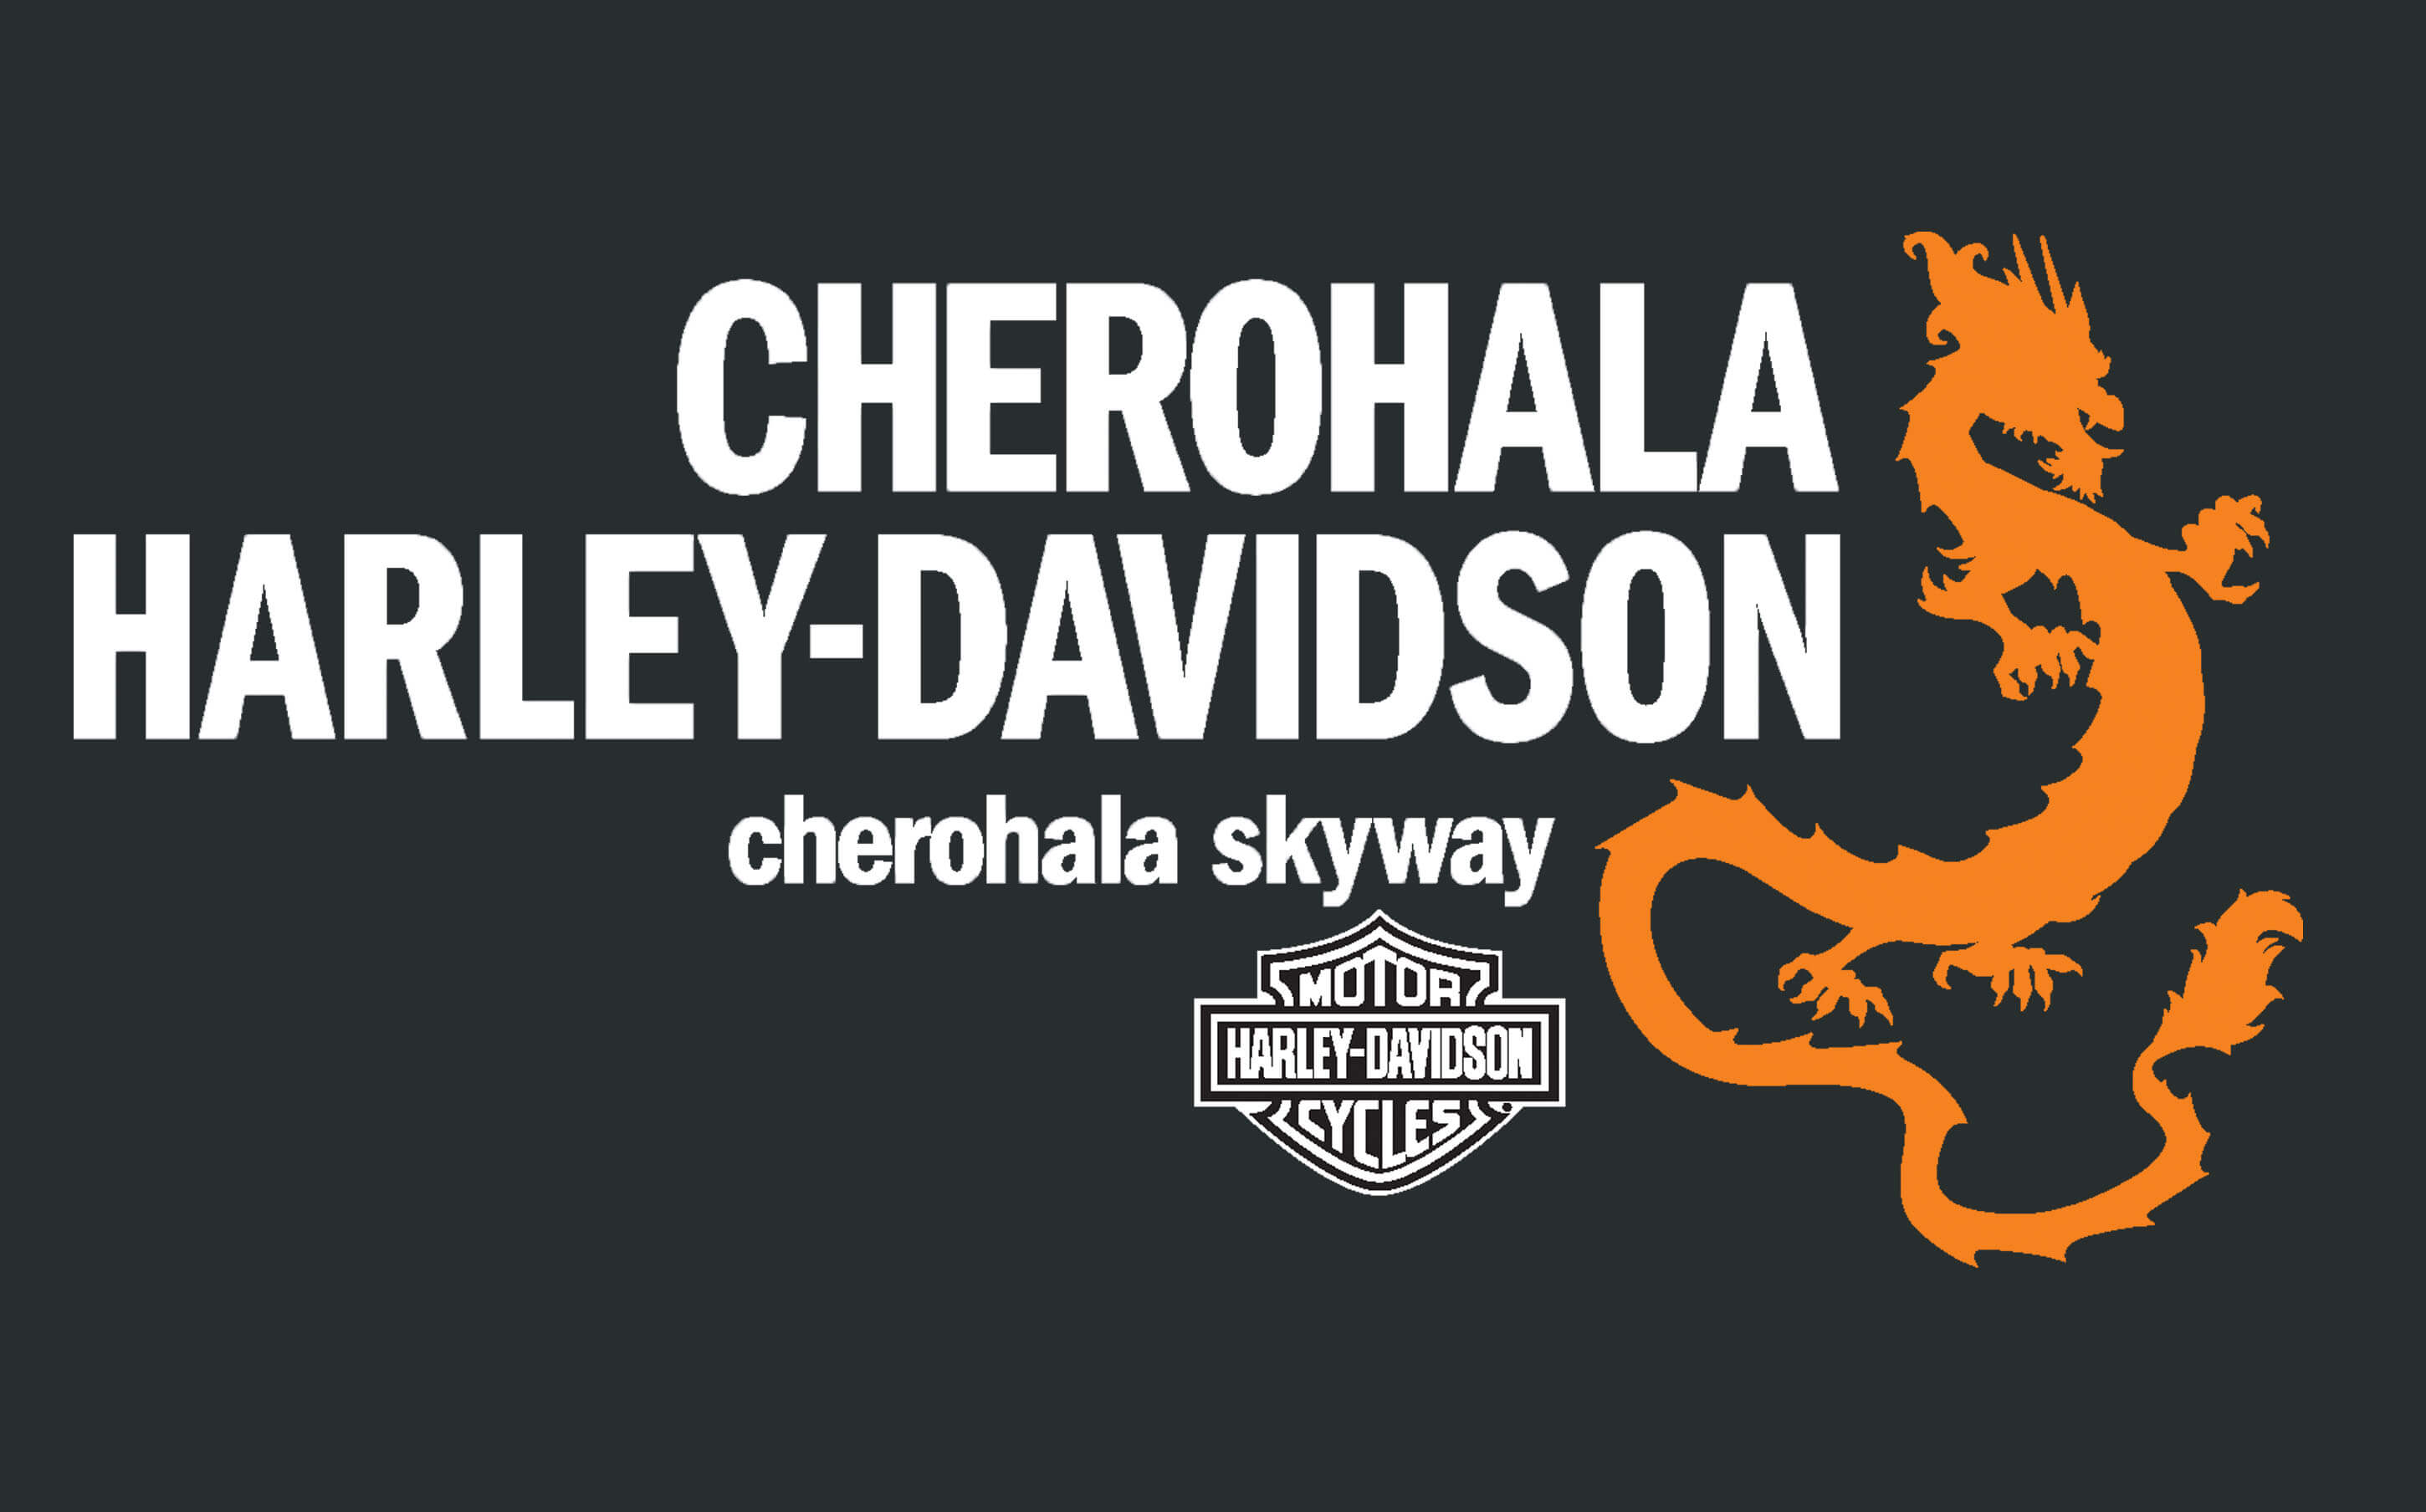 Cherohala Harley-Davidson®